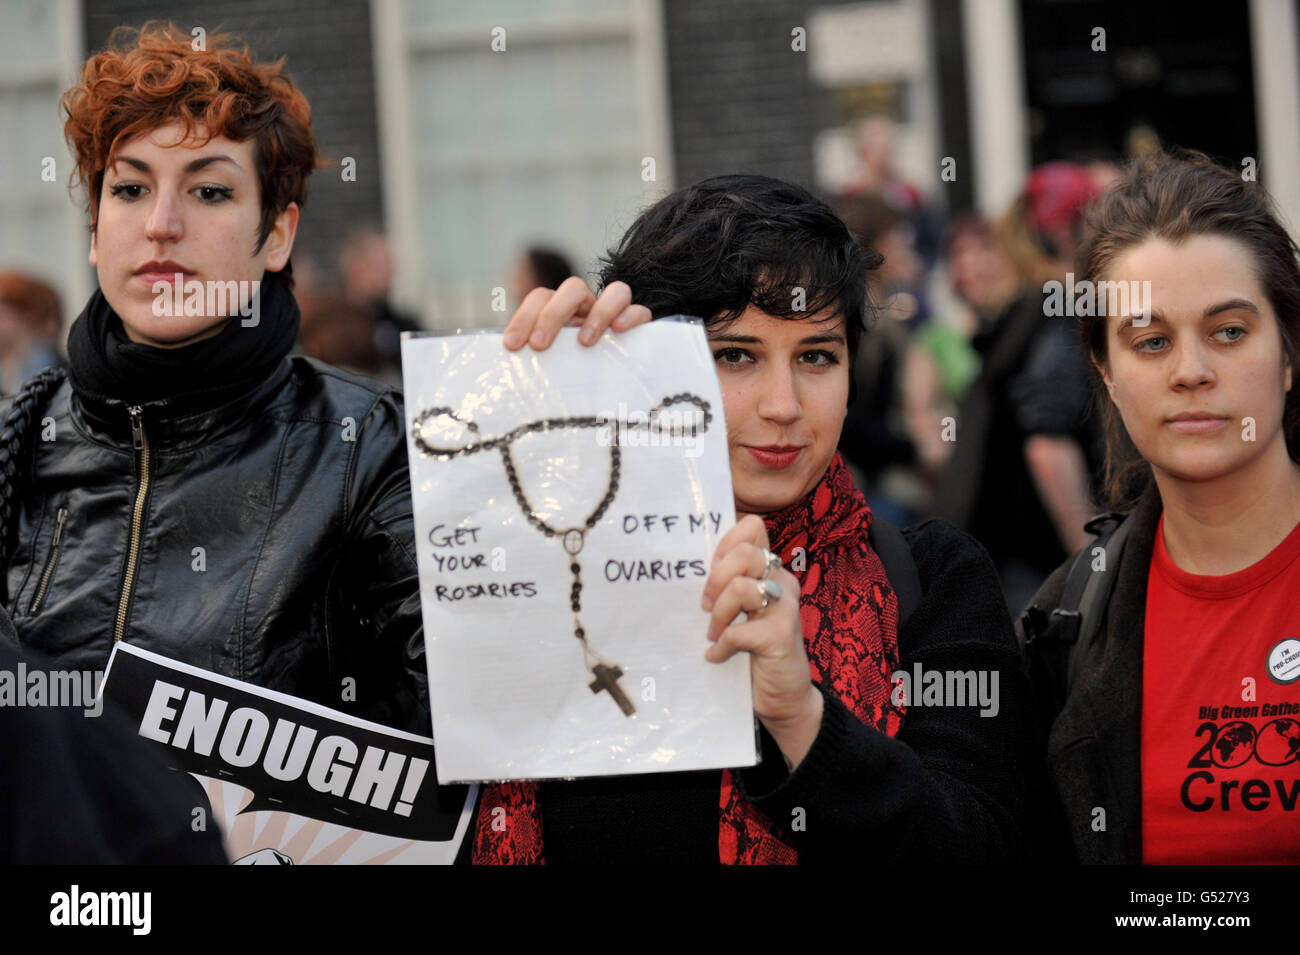 Pro-Choice-Demonstranten konfrontieren Mitglieder der 40 Days for Life-Kampagnengruppe während einer Mahnwache gegen Abtreibung auf dem Bedford Square in London. Stockfoto